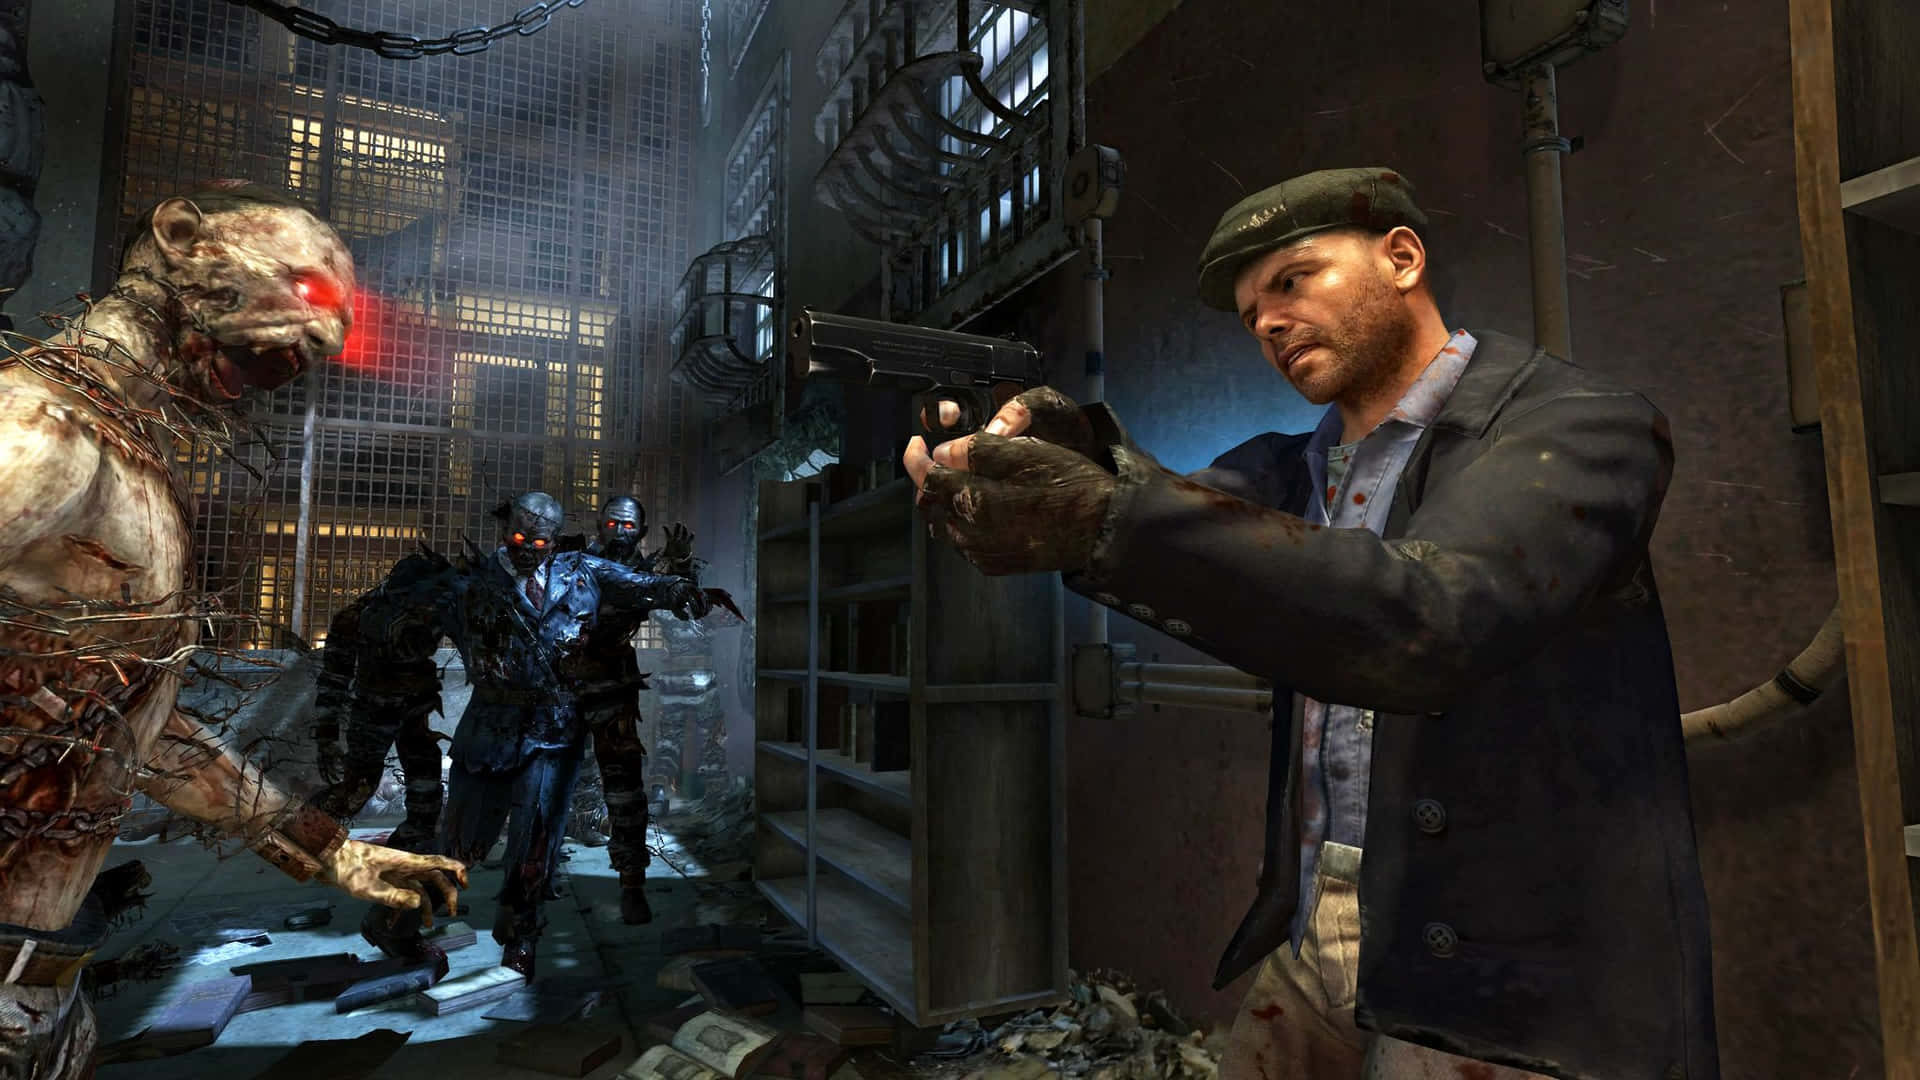 Neuewaffen Und Gadgets Gibt Es In Hülle Und Fülle In Call Of Duty Black Ops 2. Wallpaper